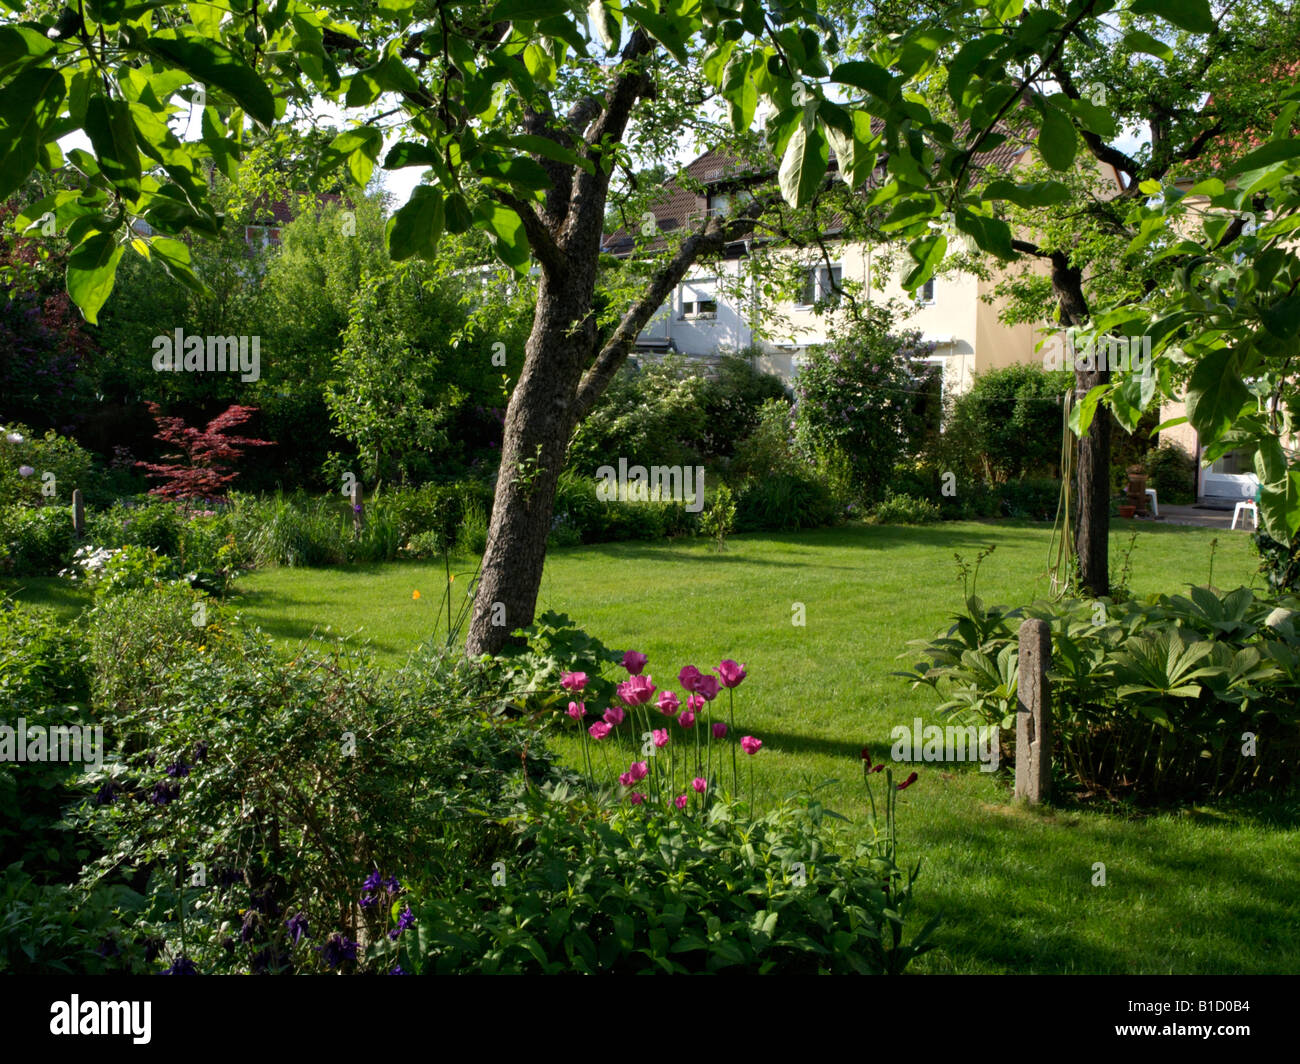 Villetta a schiera con giardino prato e alberi da frutto Foto Stock